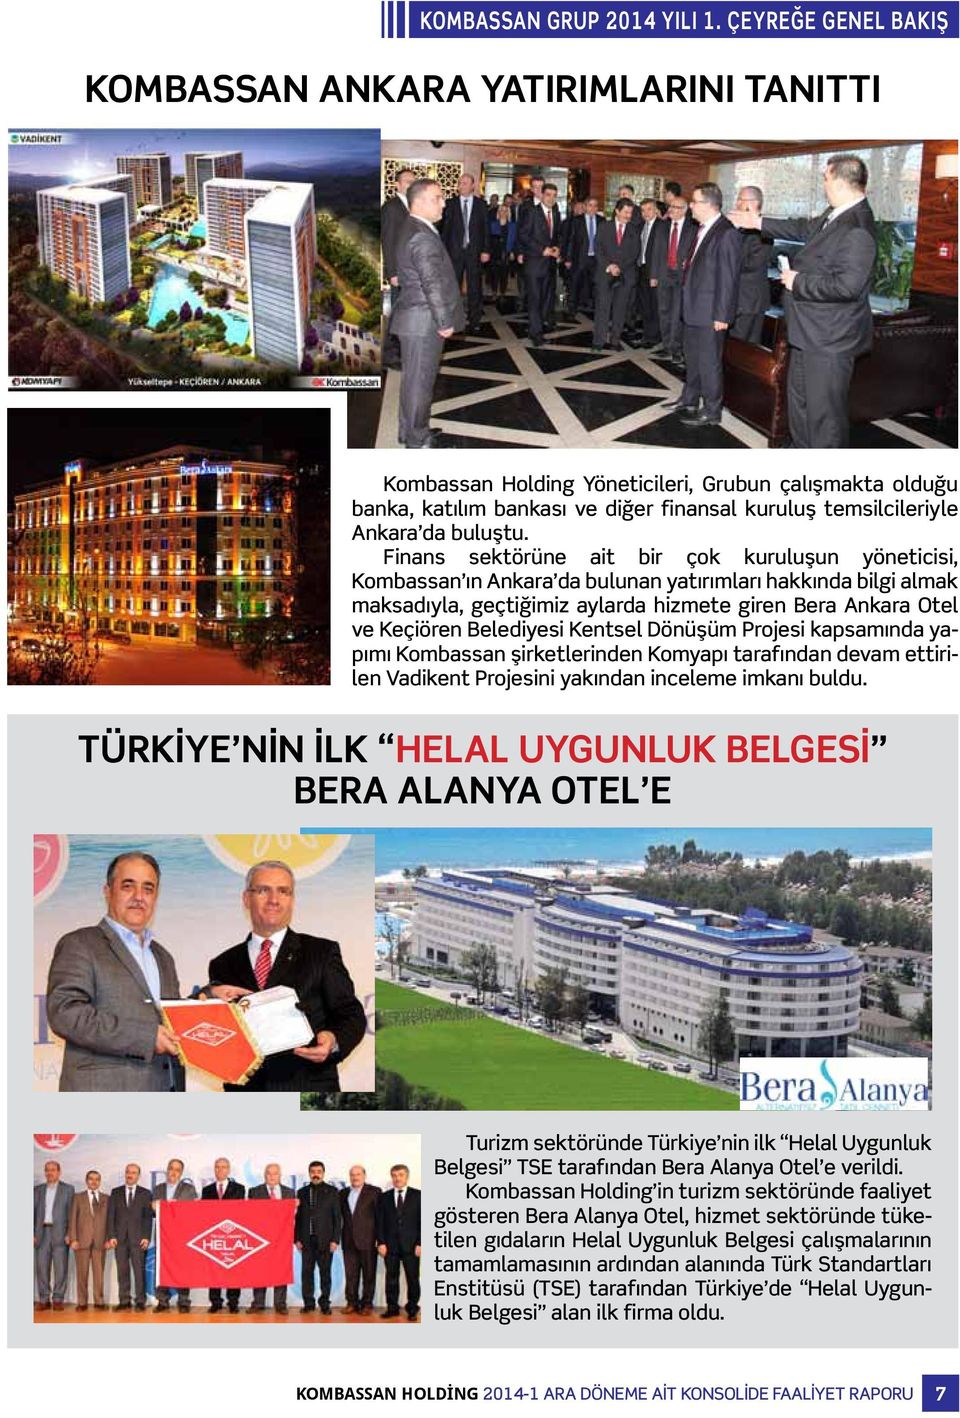 Finans sektörüne ait bir çok kuruluşun yöneticisi, Kombassan ın Ankara da bulunan yatırımları hakkında bilgi almak maksadıyla, geçtiğimiz aylarda hizmete giren Bera Ankara Otel ve Keçiören Belediyesi